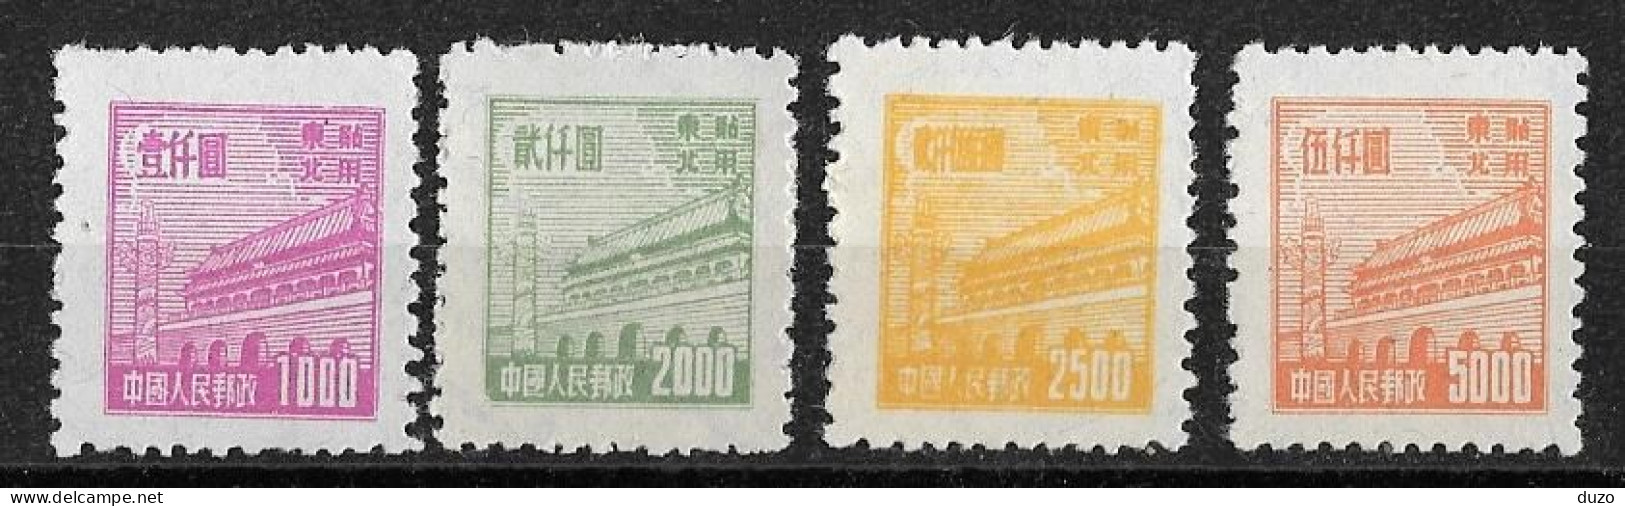 Chine Du Nord-Est 1950/51  - Tien-an-Men (Pékin) - YT N° 127/128/129/130 émis Neuf Sans Gomme - Chine Du Nord-Est 1946-48